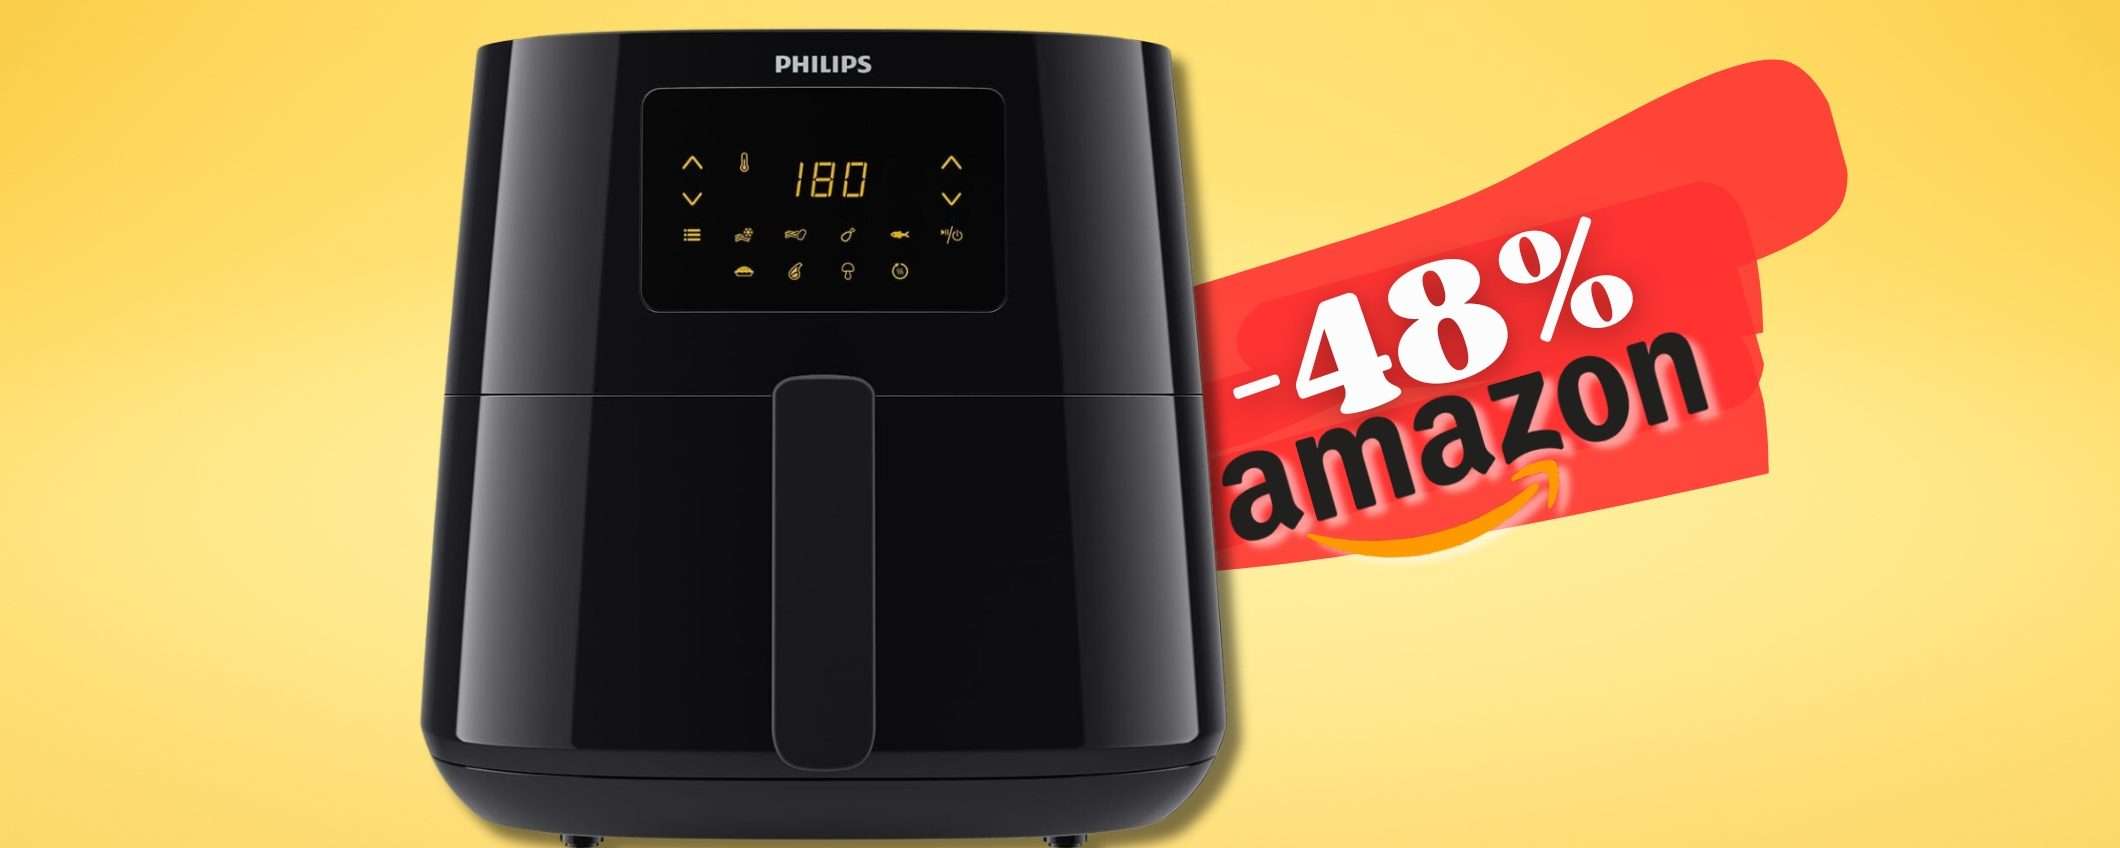 Philips Airfryer XL Essential, la REGINA in sconto su Amazon al 48%